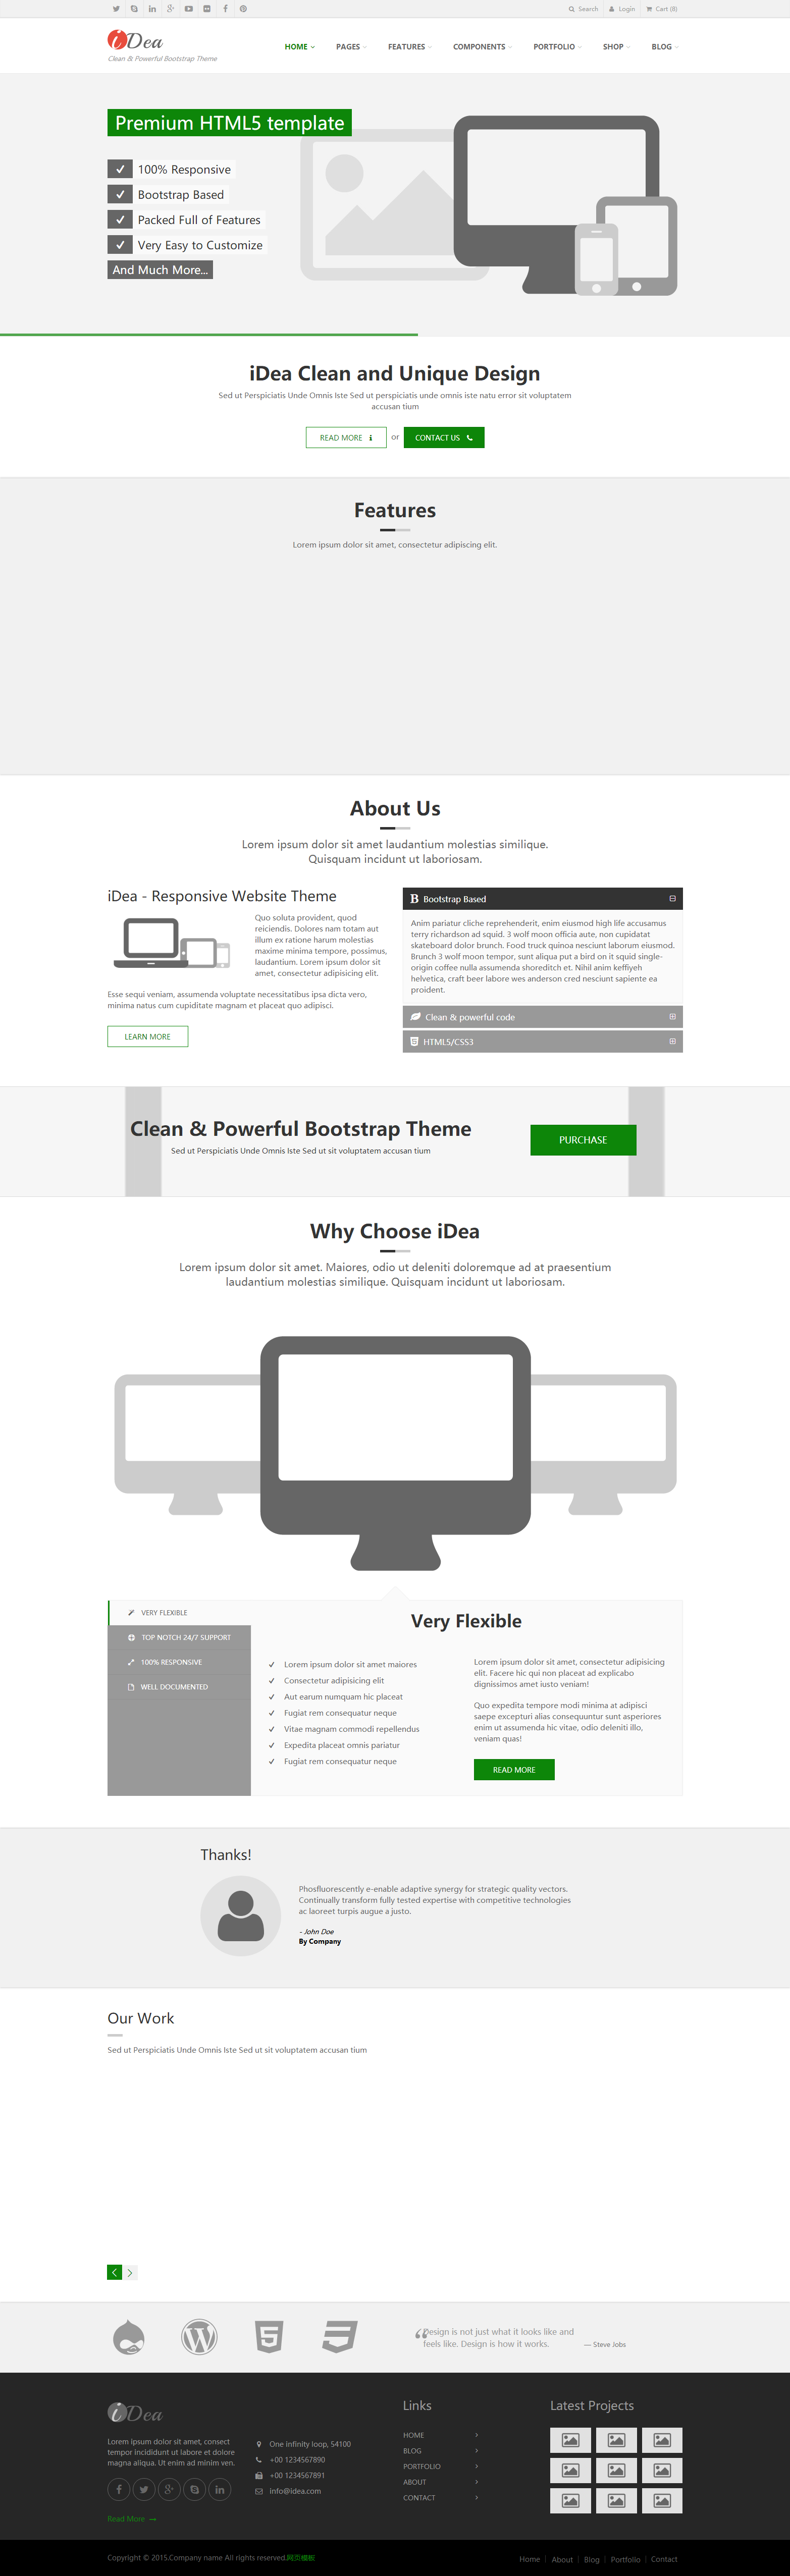 简洁白色风格的互联网bootstrap企业网站模板